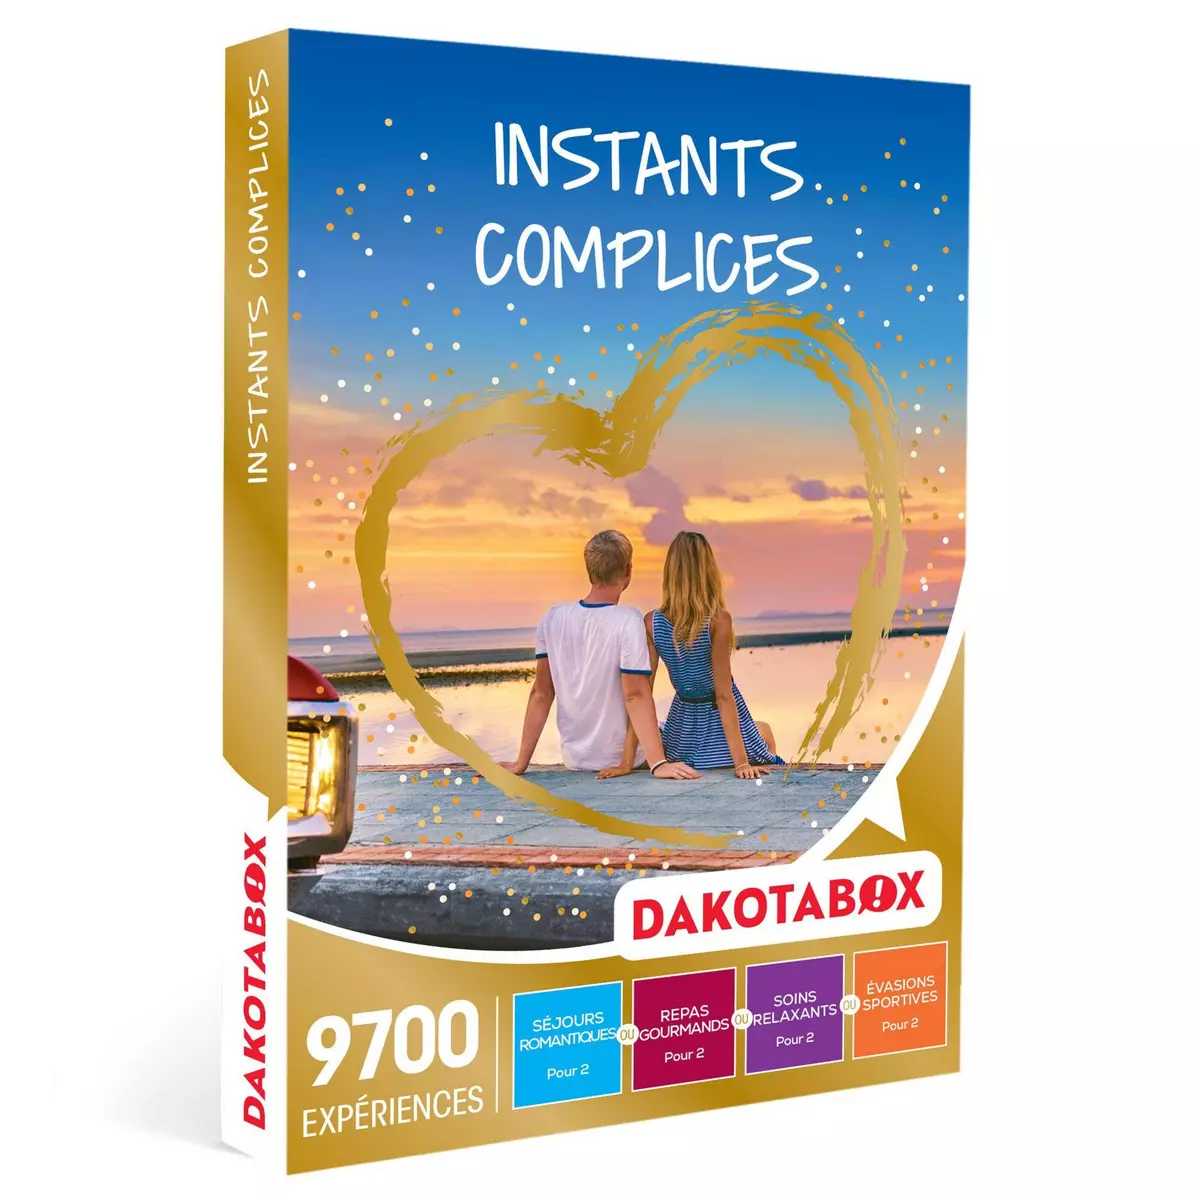 Dakotabox Instants complices - Coffret Cadeau Multi-Activités